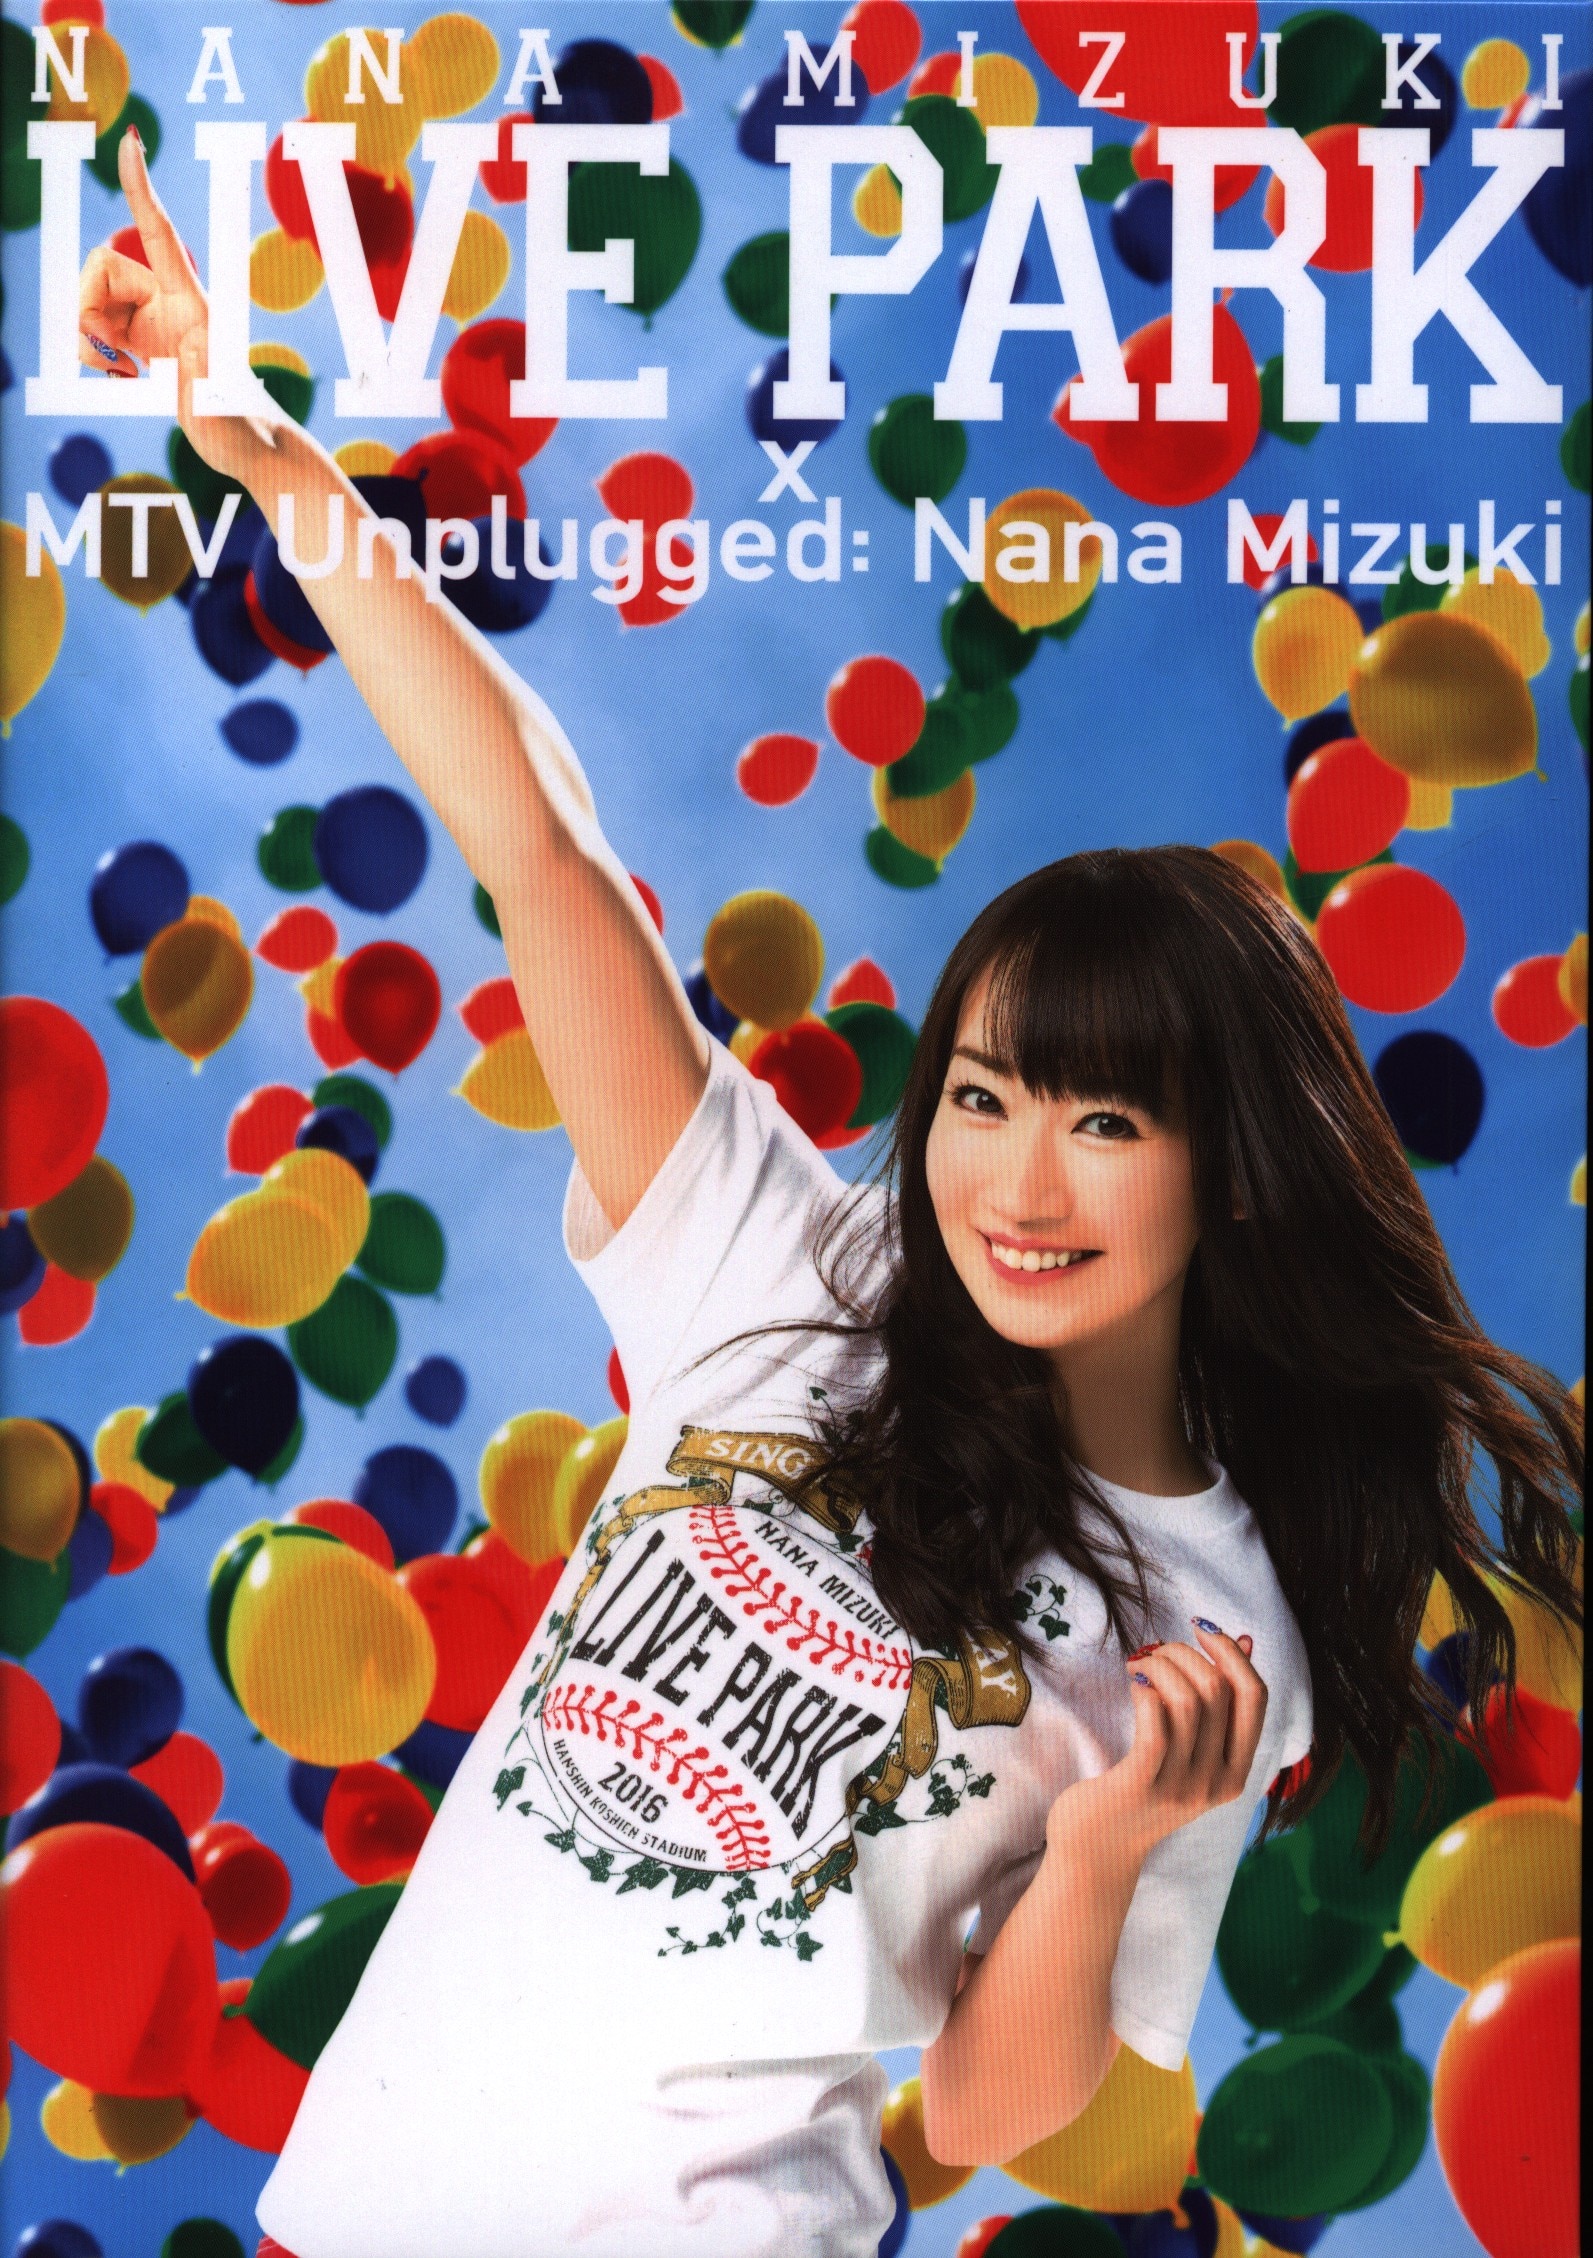 水樹奈々 NANA MIZUKI LIVE PARK×MTV Unplugged:Nana Mizuki ...